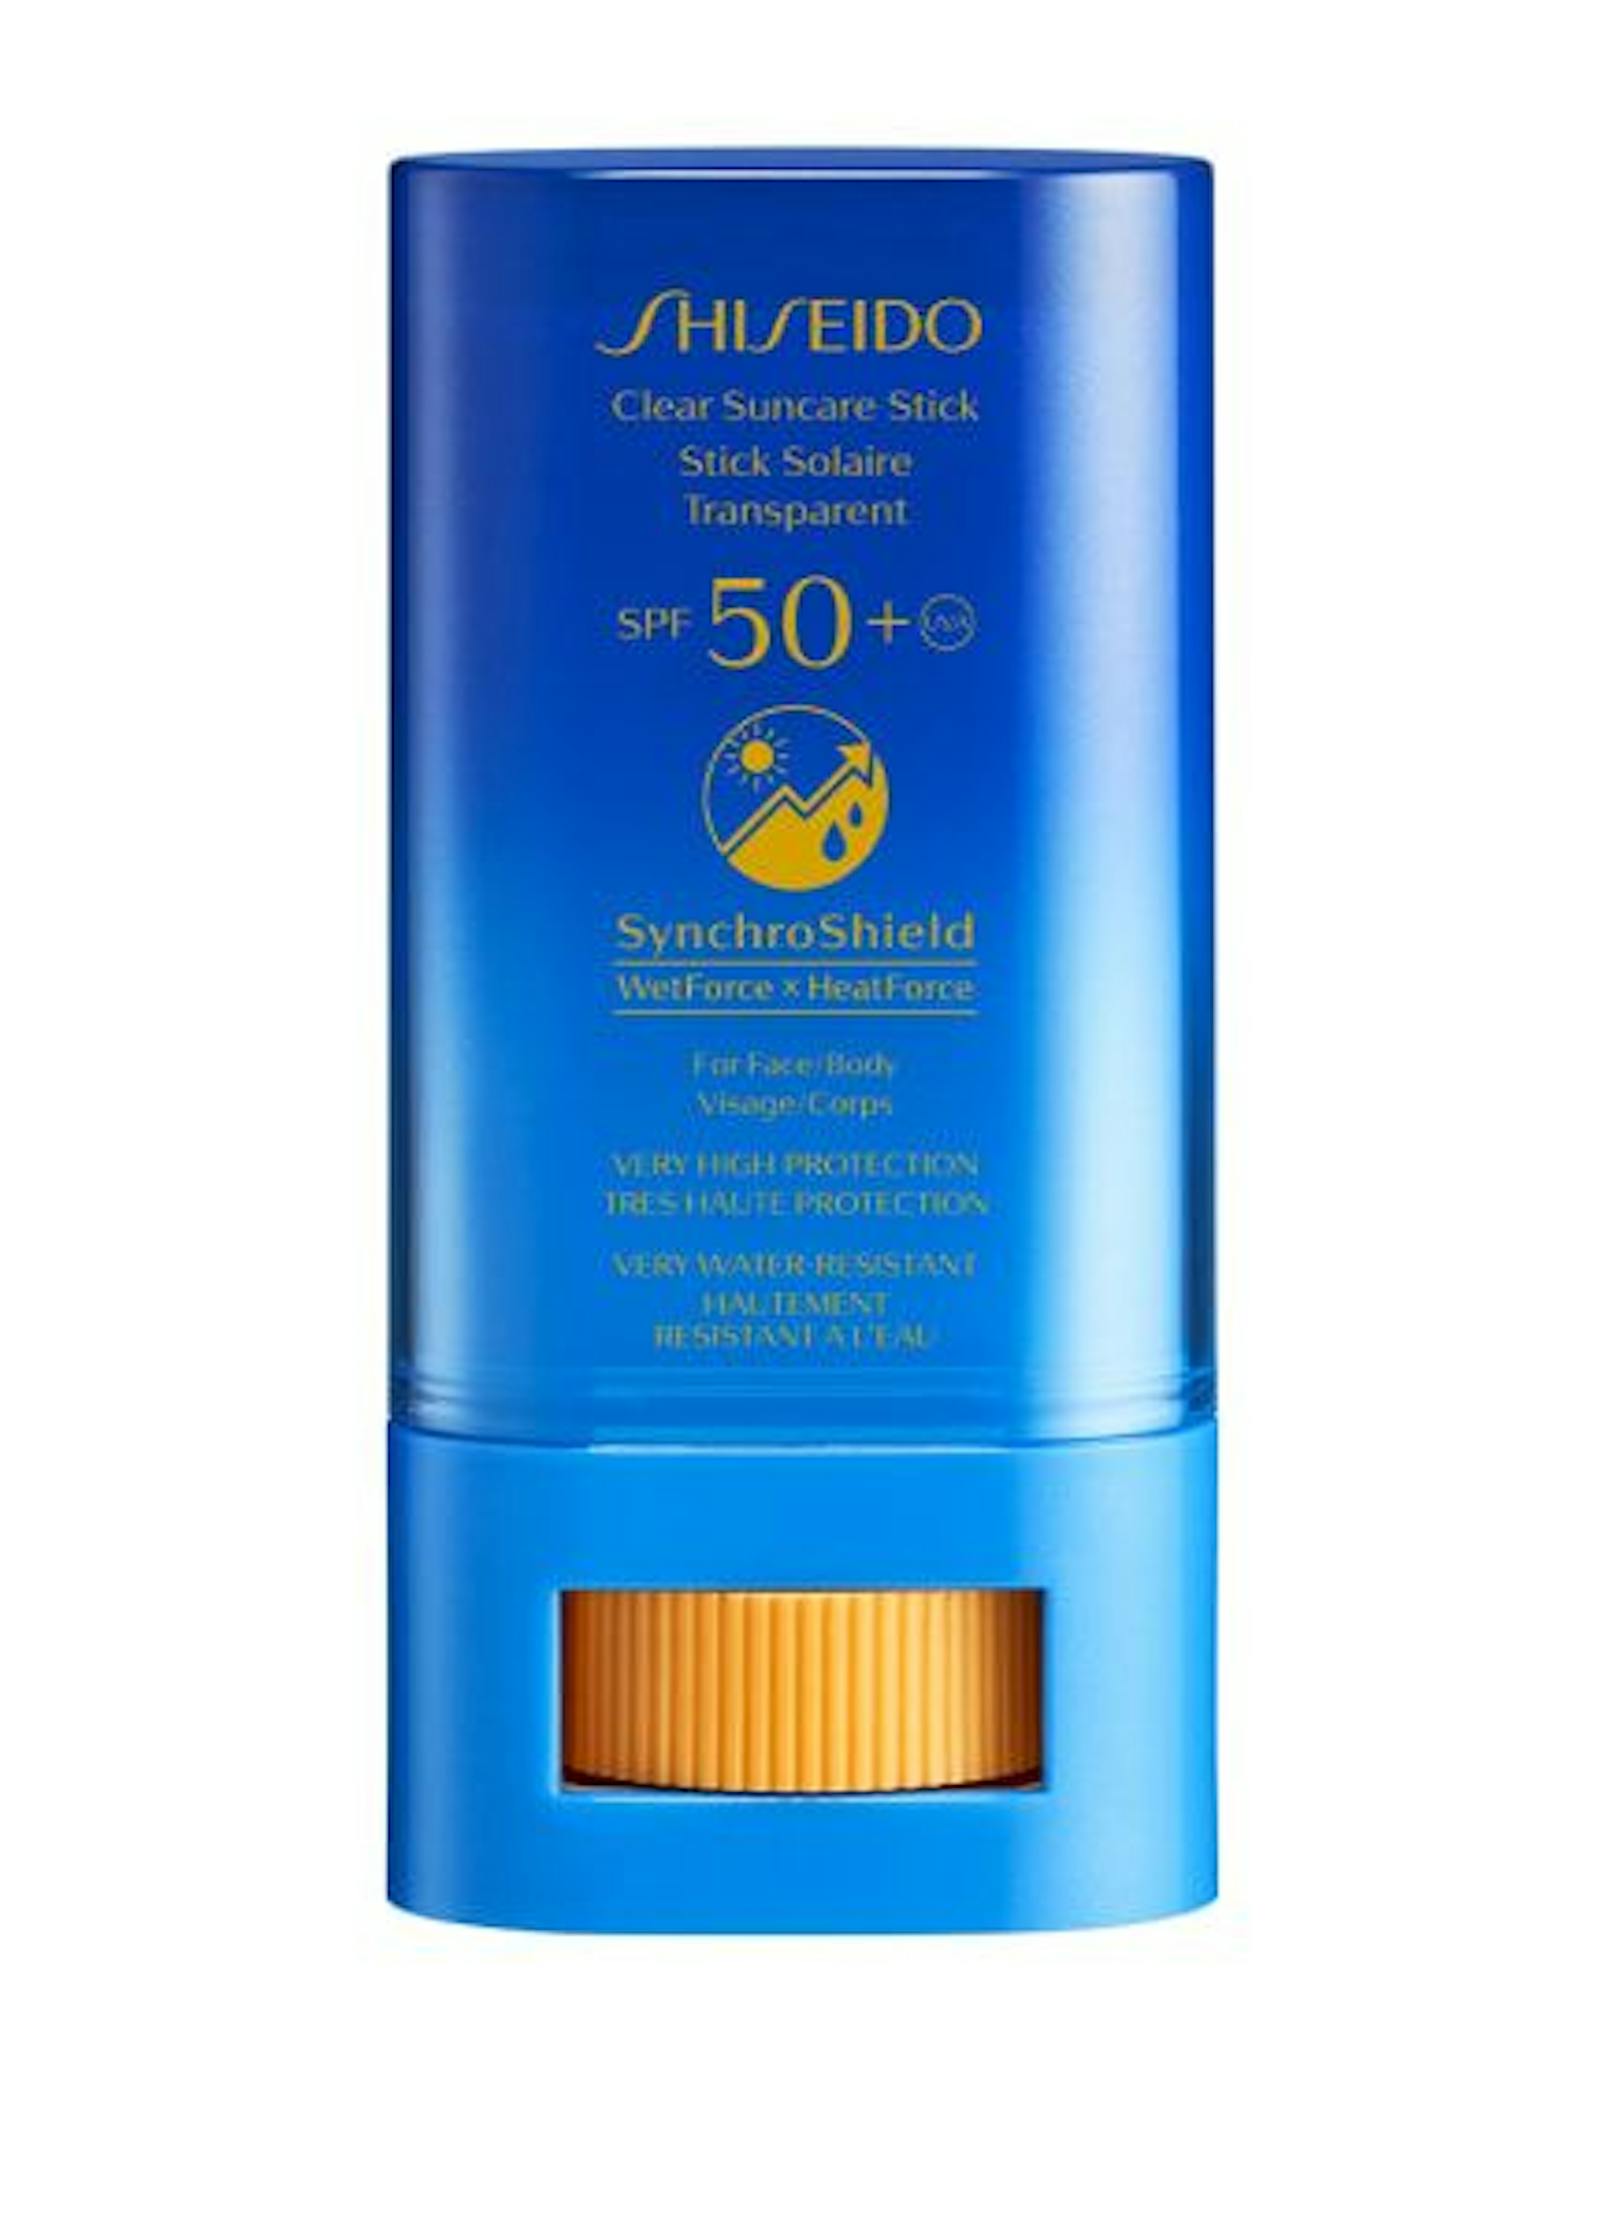 Einen besonders <strong>hohen Schutz </strong>vor UV-Strahlen bietet der "Clear Suncare Stick" von Shiseido (34 Euro).